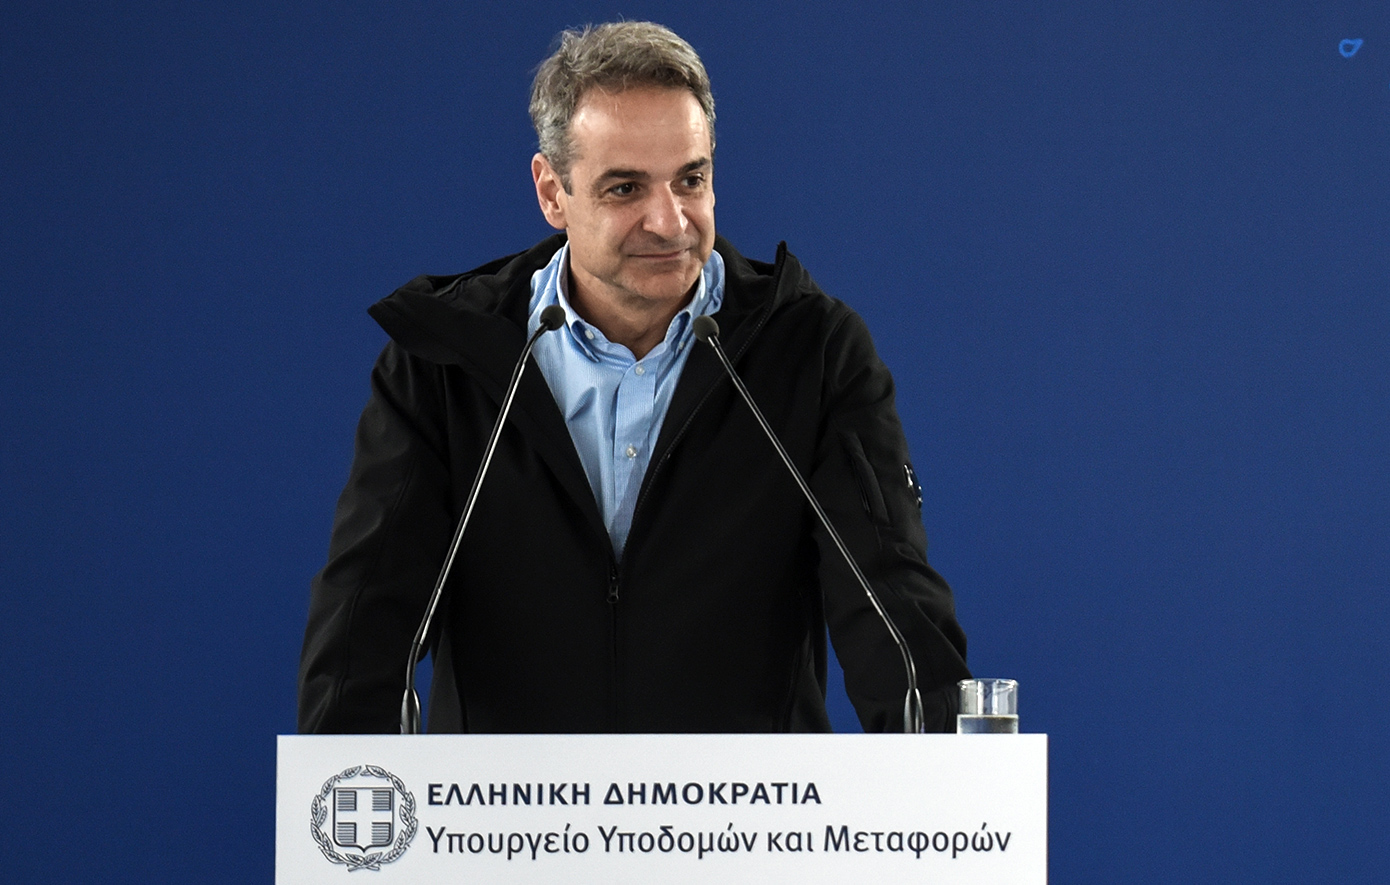 Μητσοτάκης για τον αυτοκινητόδρομο Ε65 Λαμία-Καλαμπάκα: Η ΝΔ αγωνίζεται η Ελλάδα να γίνει Ευρώπη σε όλα τα επίπεδα